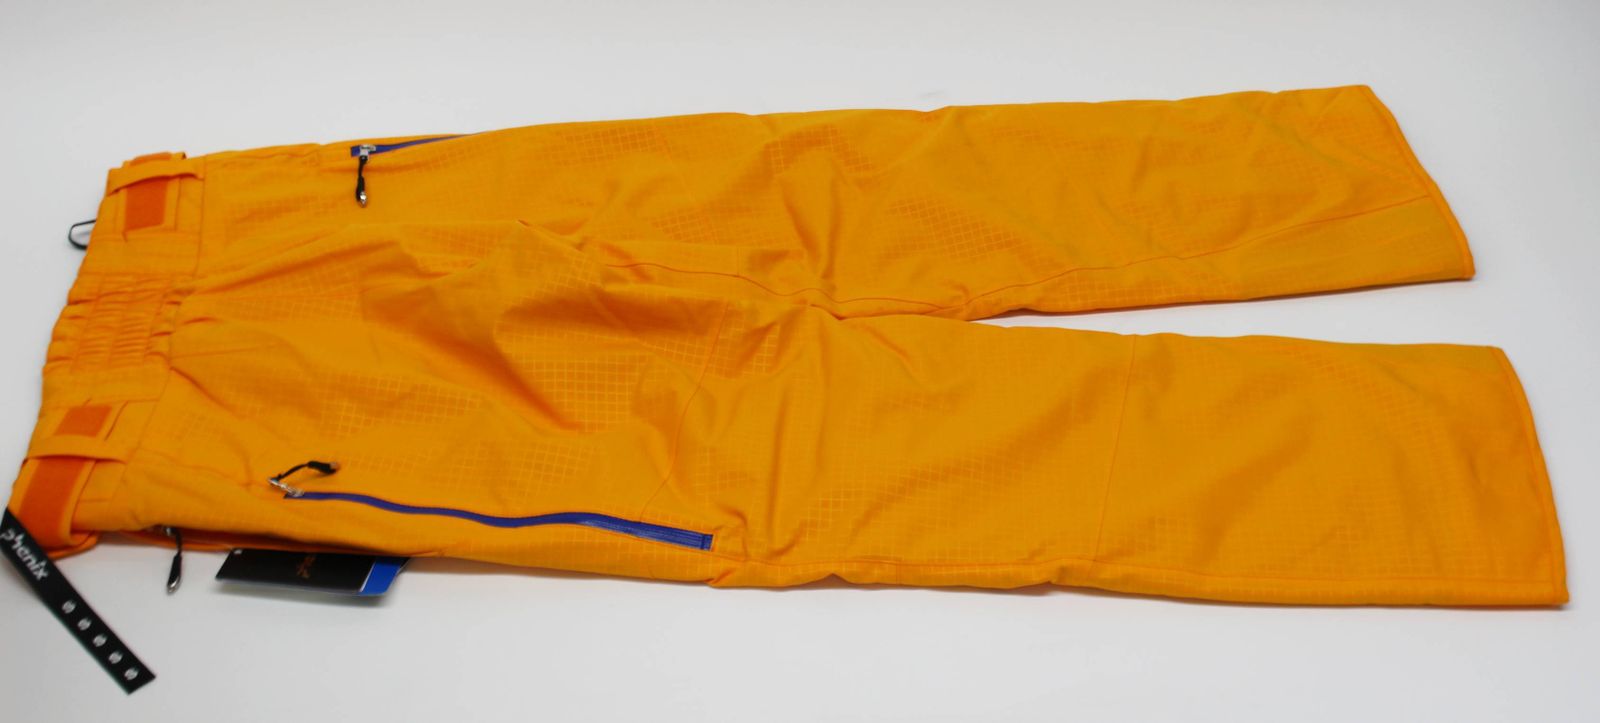 Phenix スキーウェア メンズ パンツ サイズ S オレンジ ズボン スノー 